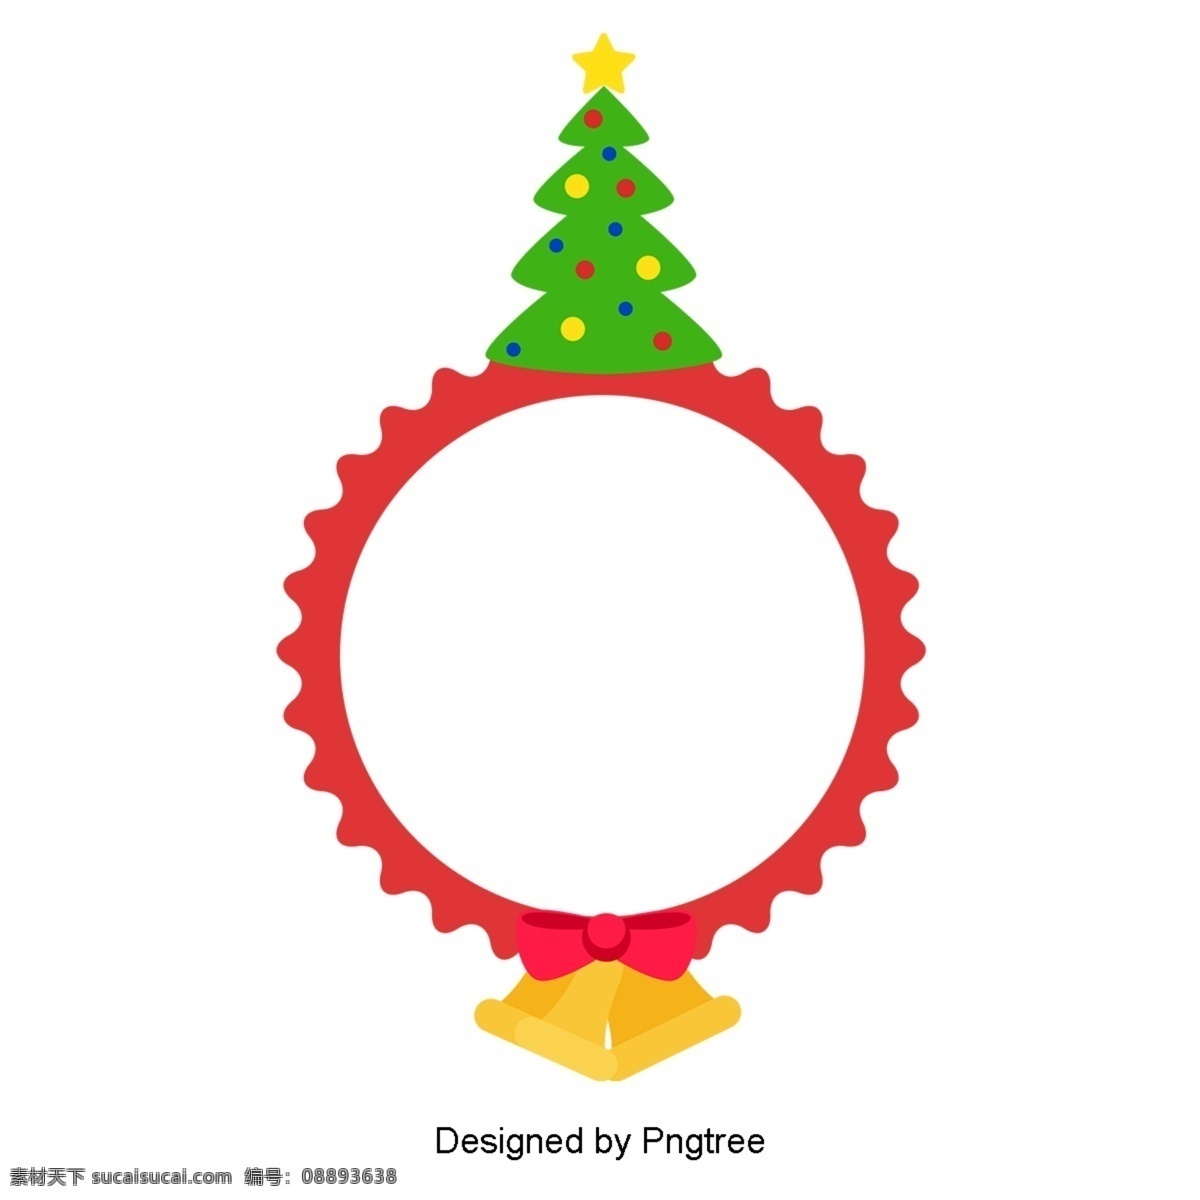 卡通 简单 圆 圣诞树 装饰 边界 红 极 简 主义 圣诞 框 圣诞节 小 铃铛 博德